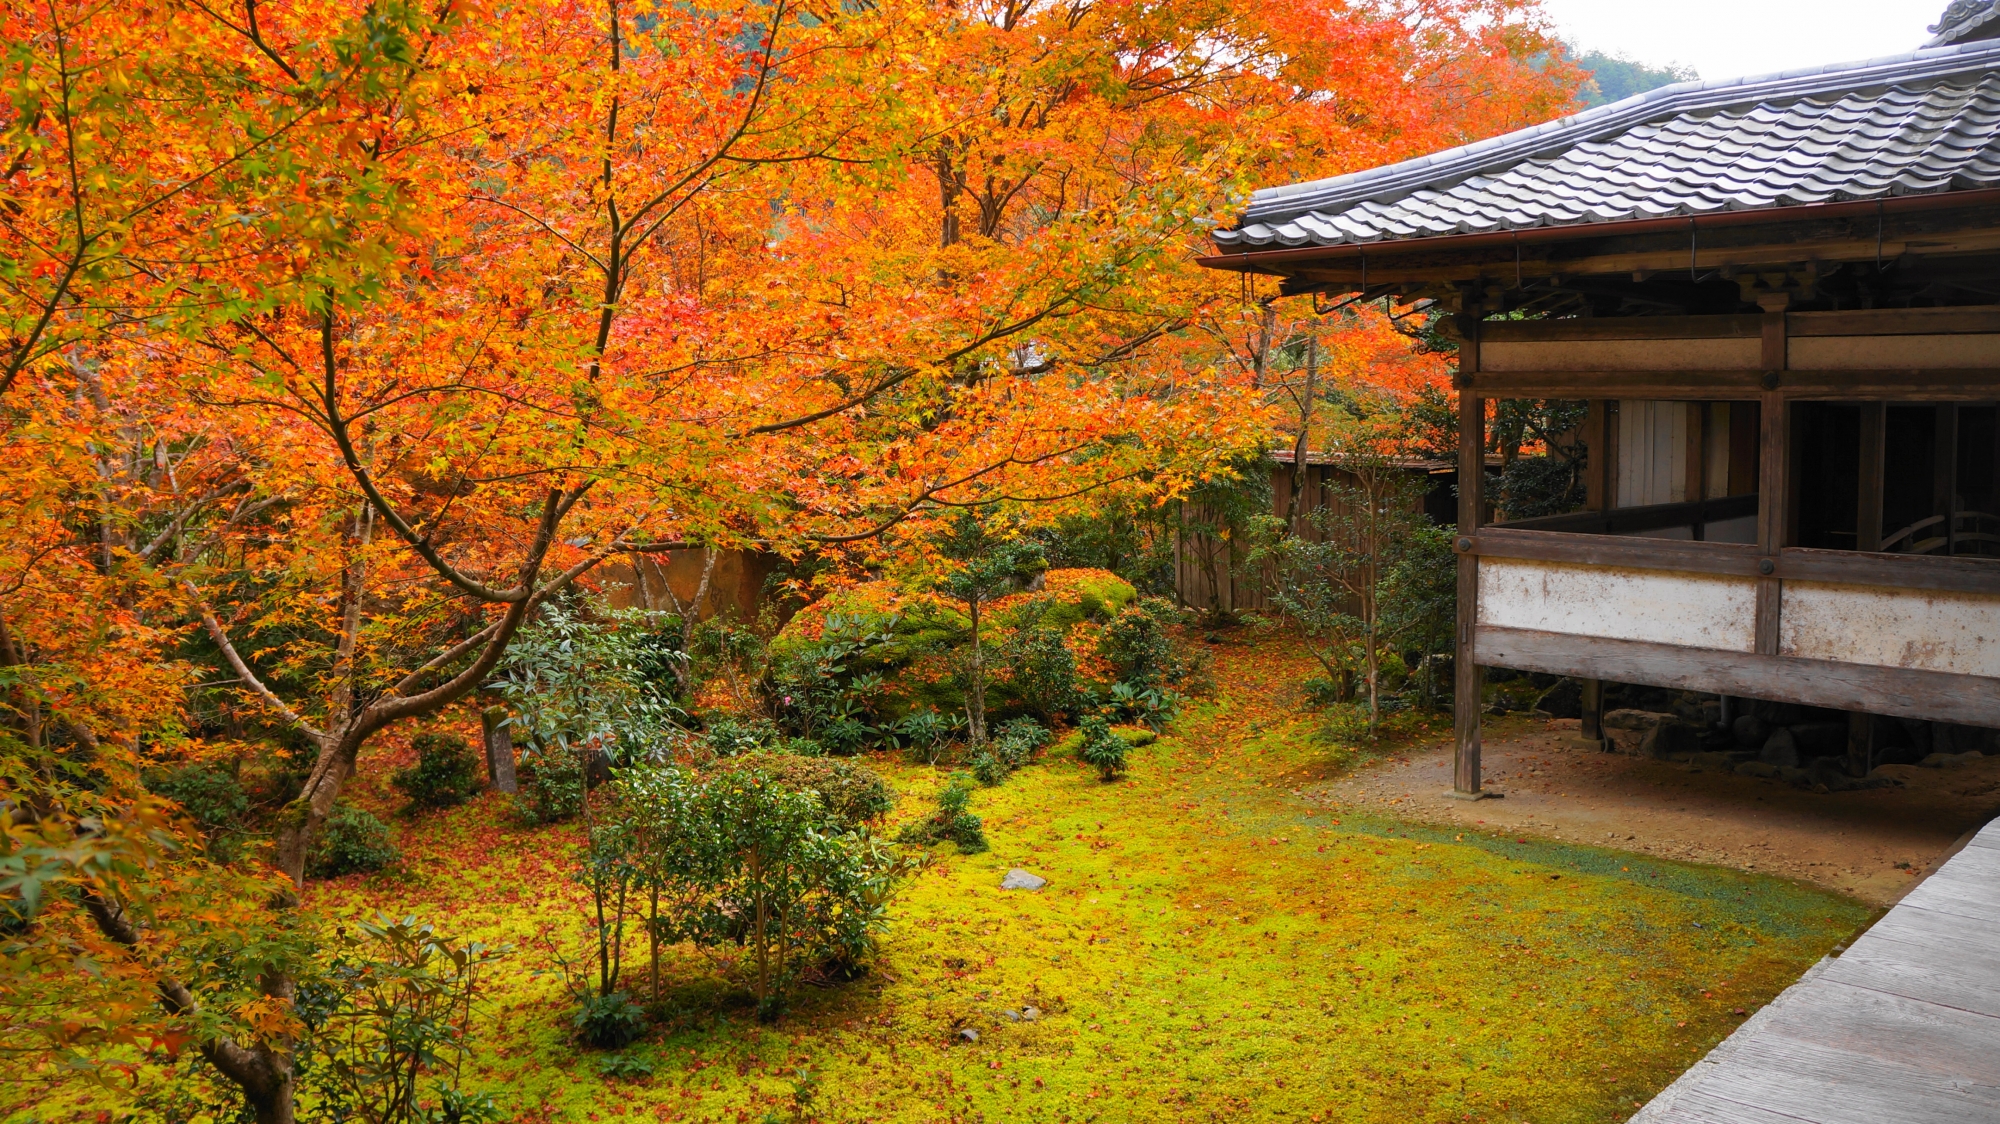 西明寺の庭園や境内を彩る癒しの淡い紅葉